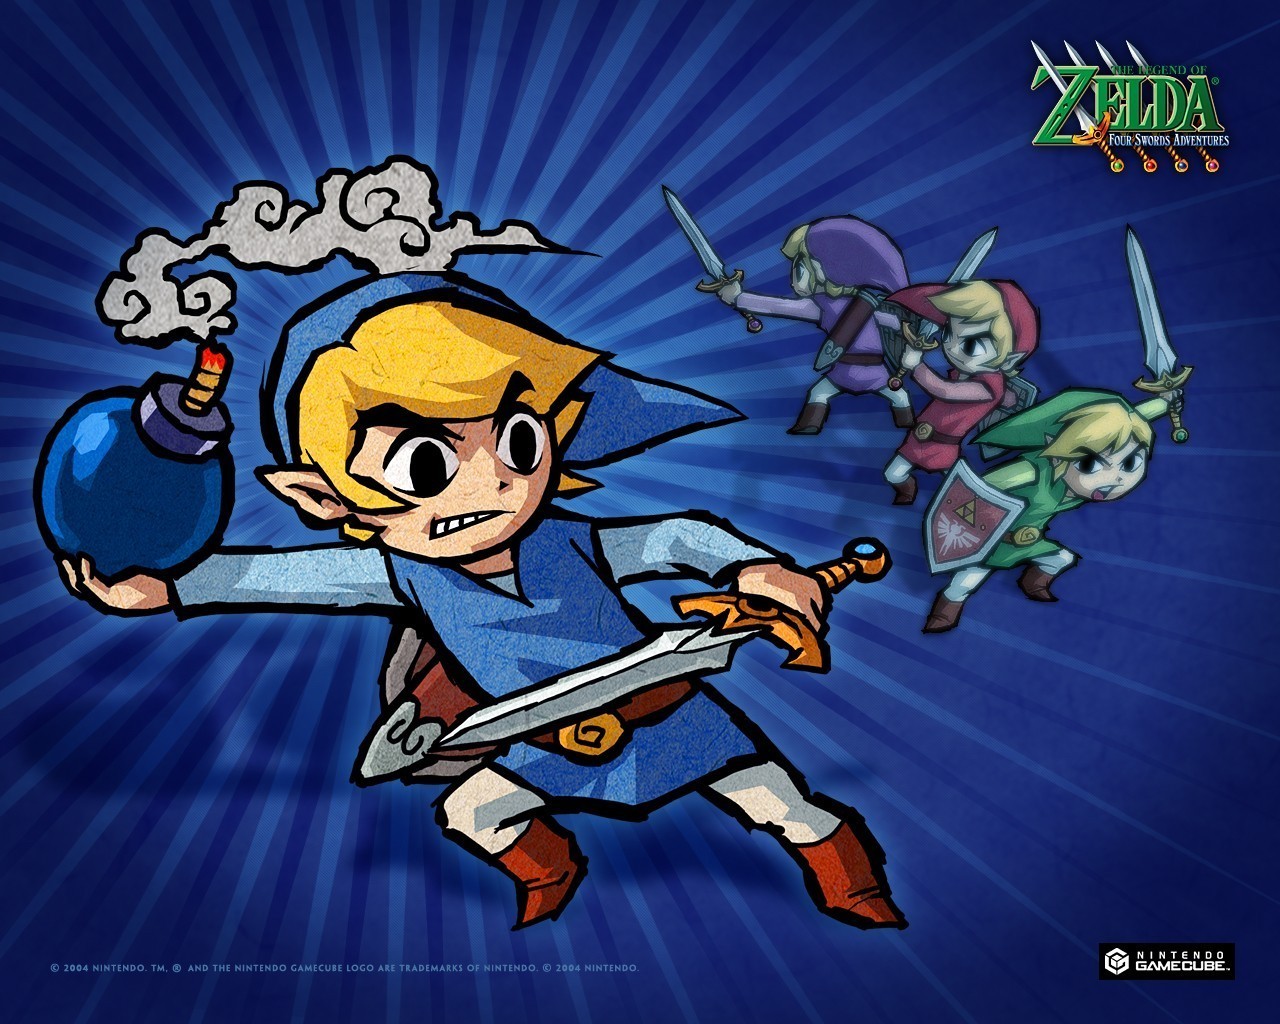 Four Swords Adventures Legend of Zelda Wallpaper